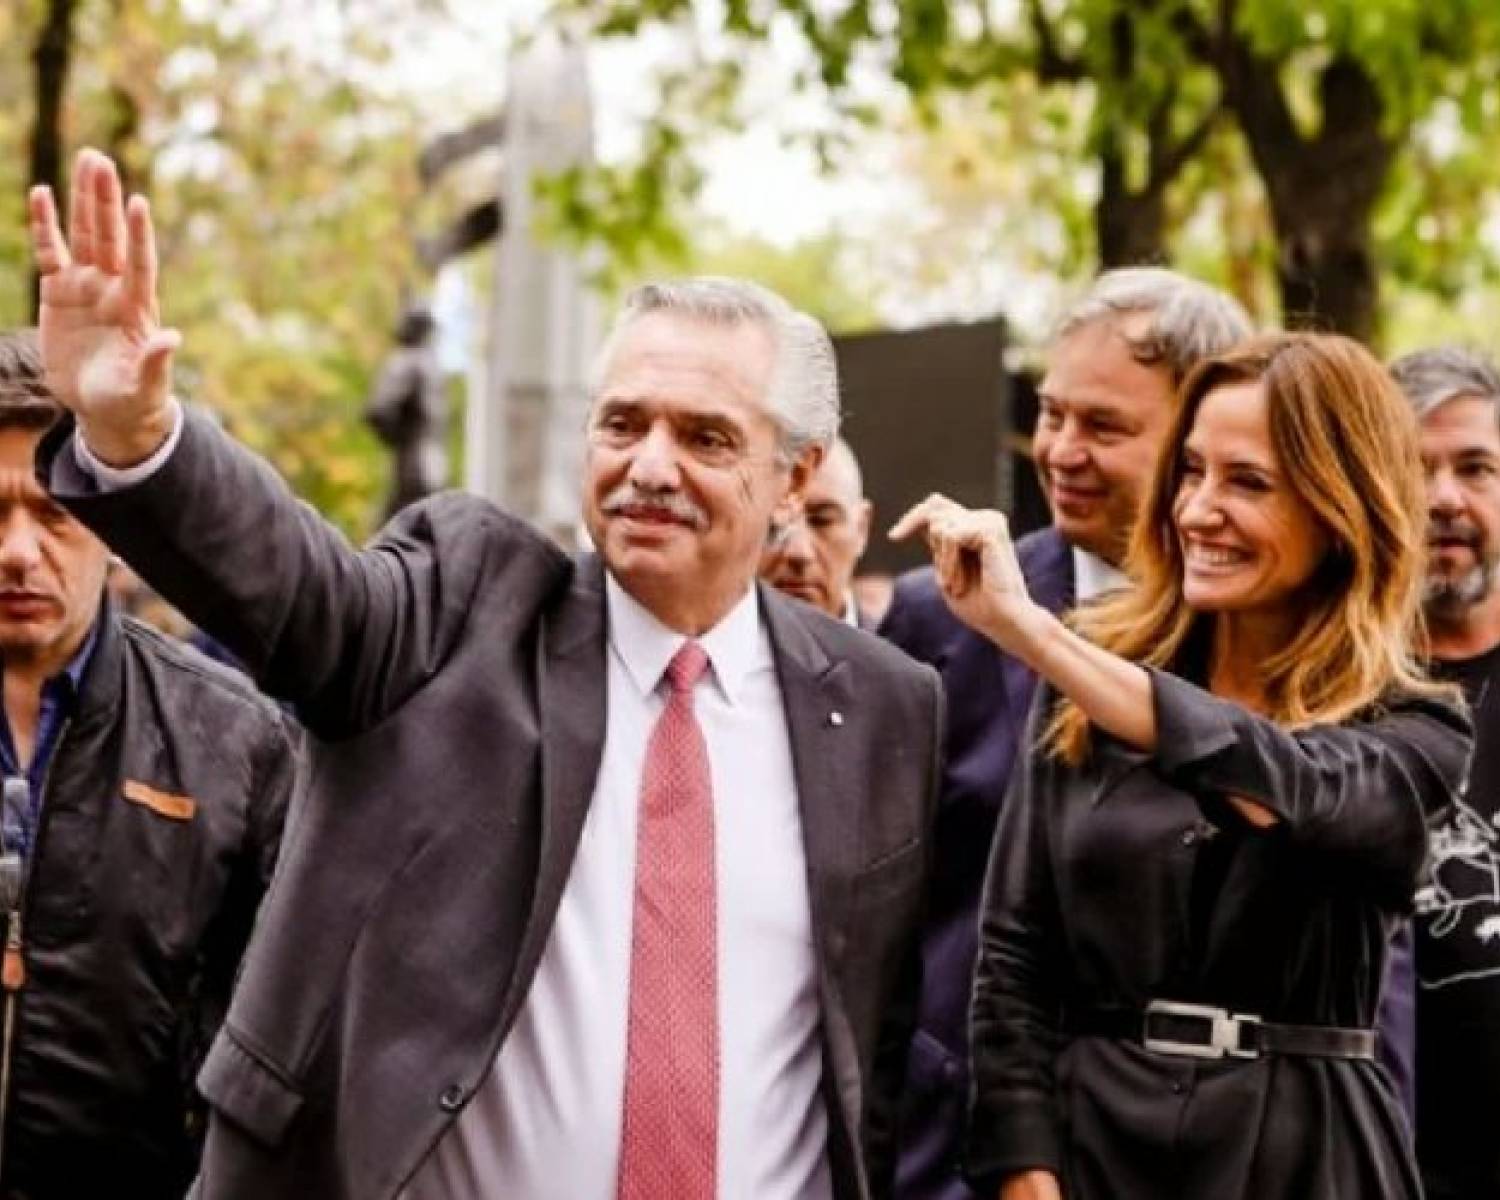 Guardapolvos sucios: el nuevo escándalo que salpica a Alberto Fernández y Victoria Tolosa Paz